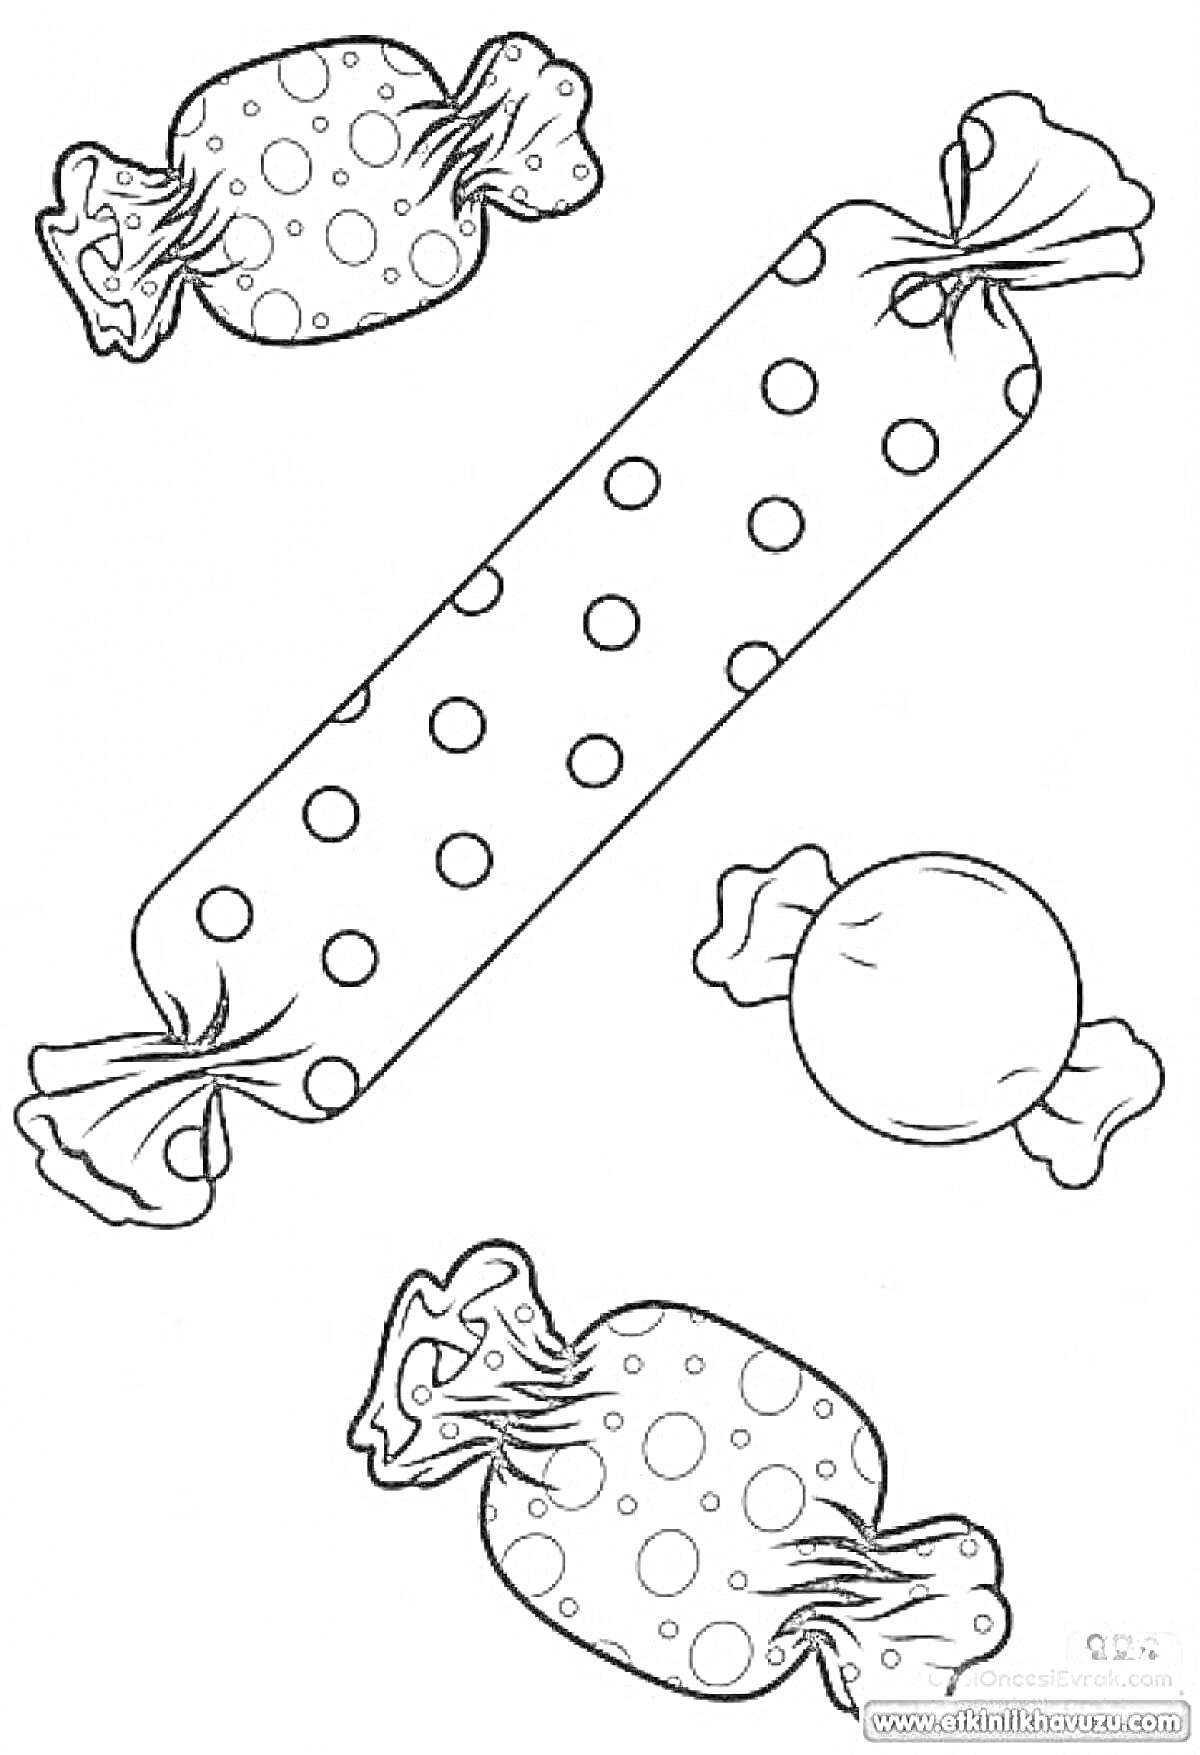 Раскраска Конфеты разных форм с горошковым узором